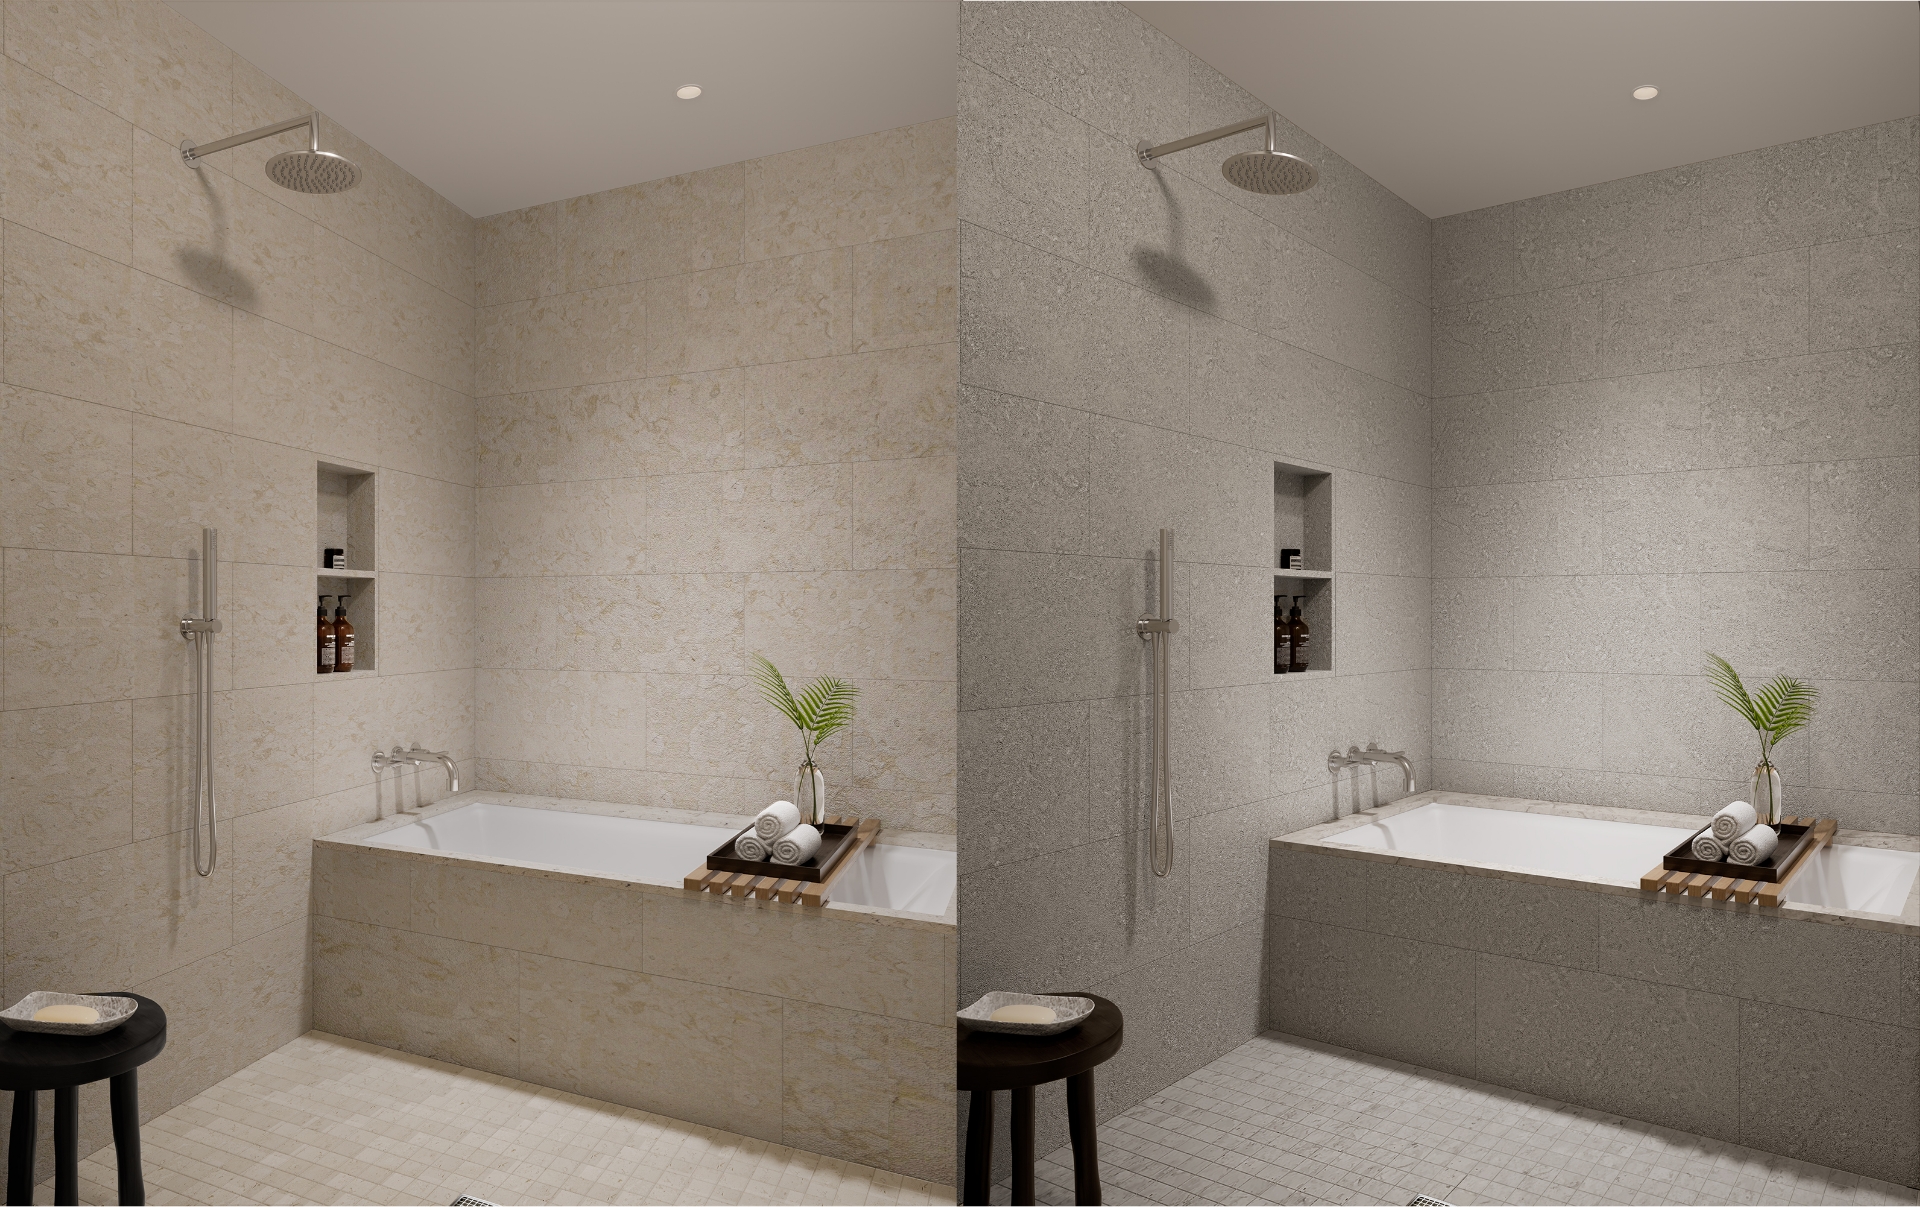 シャワーと浴槽の組み合わせで、明暗の配色を比較したサイドバイサイドビュー。